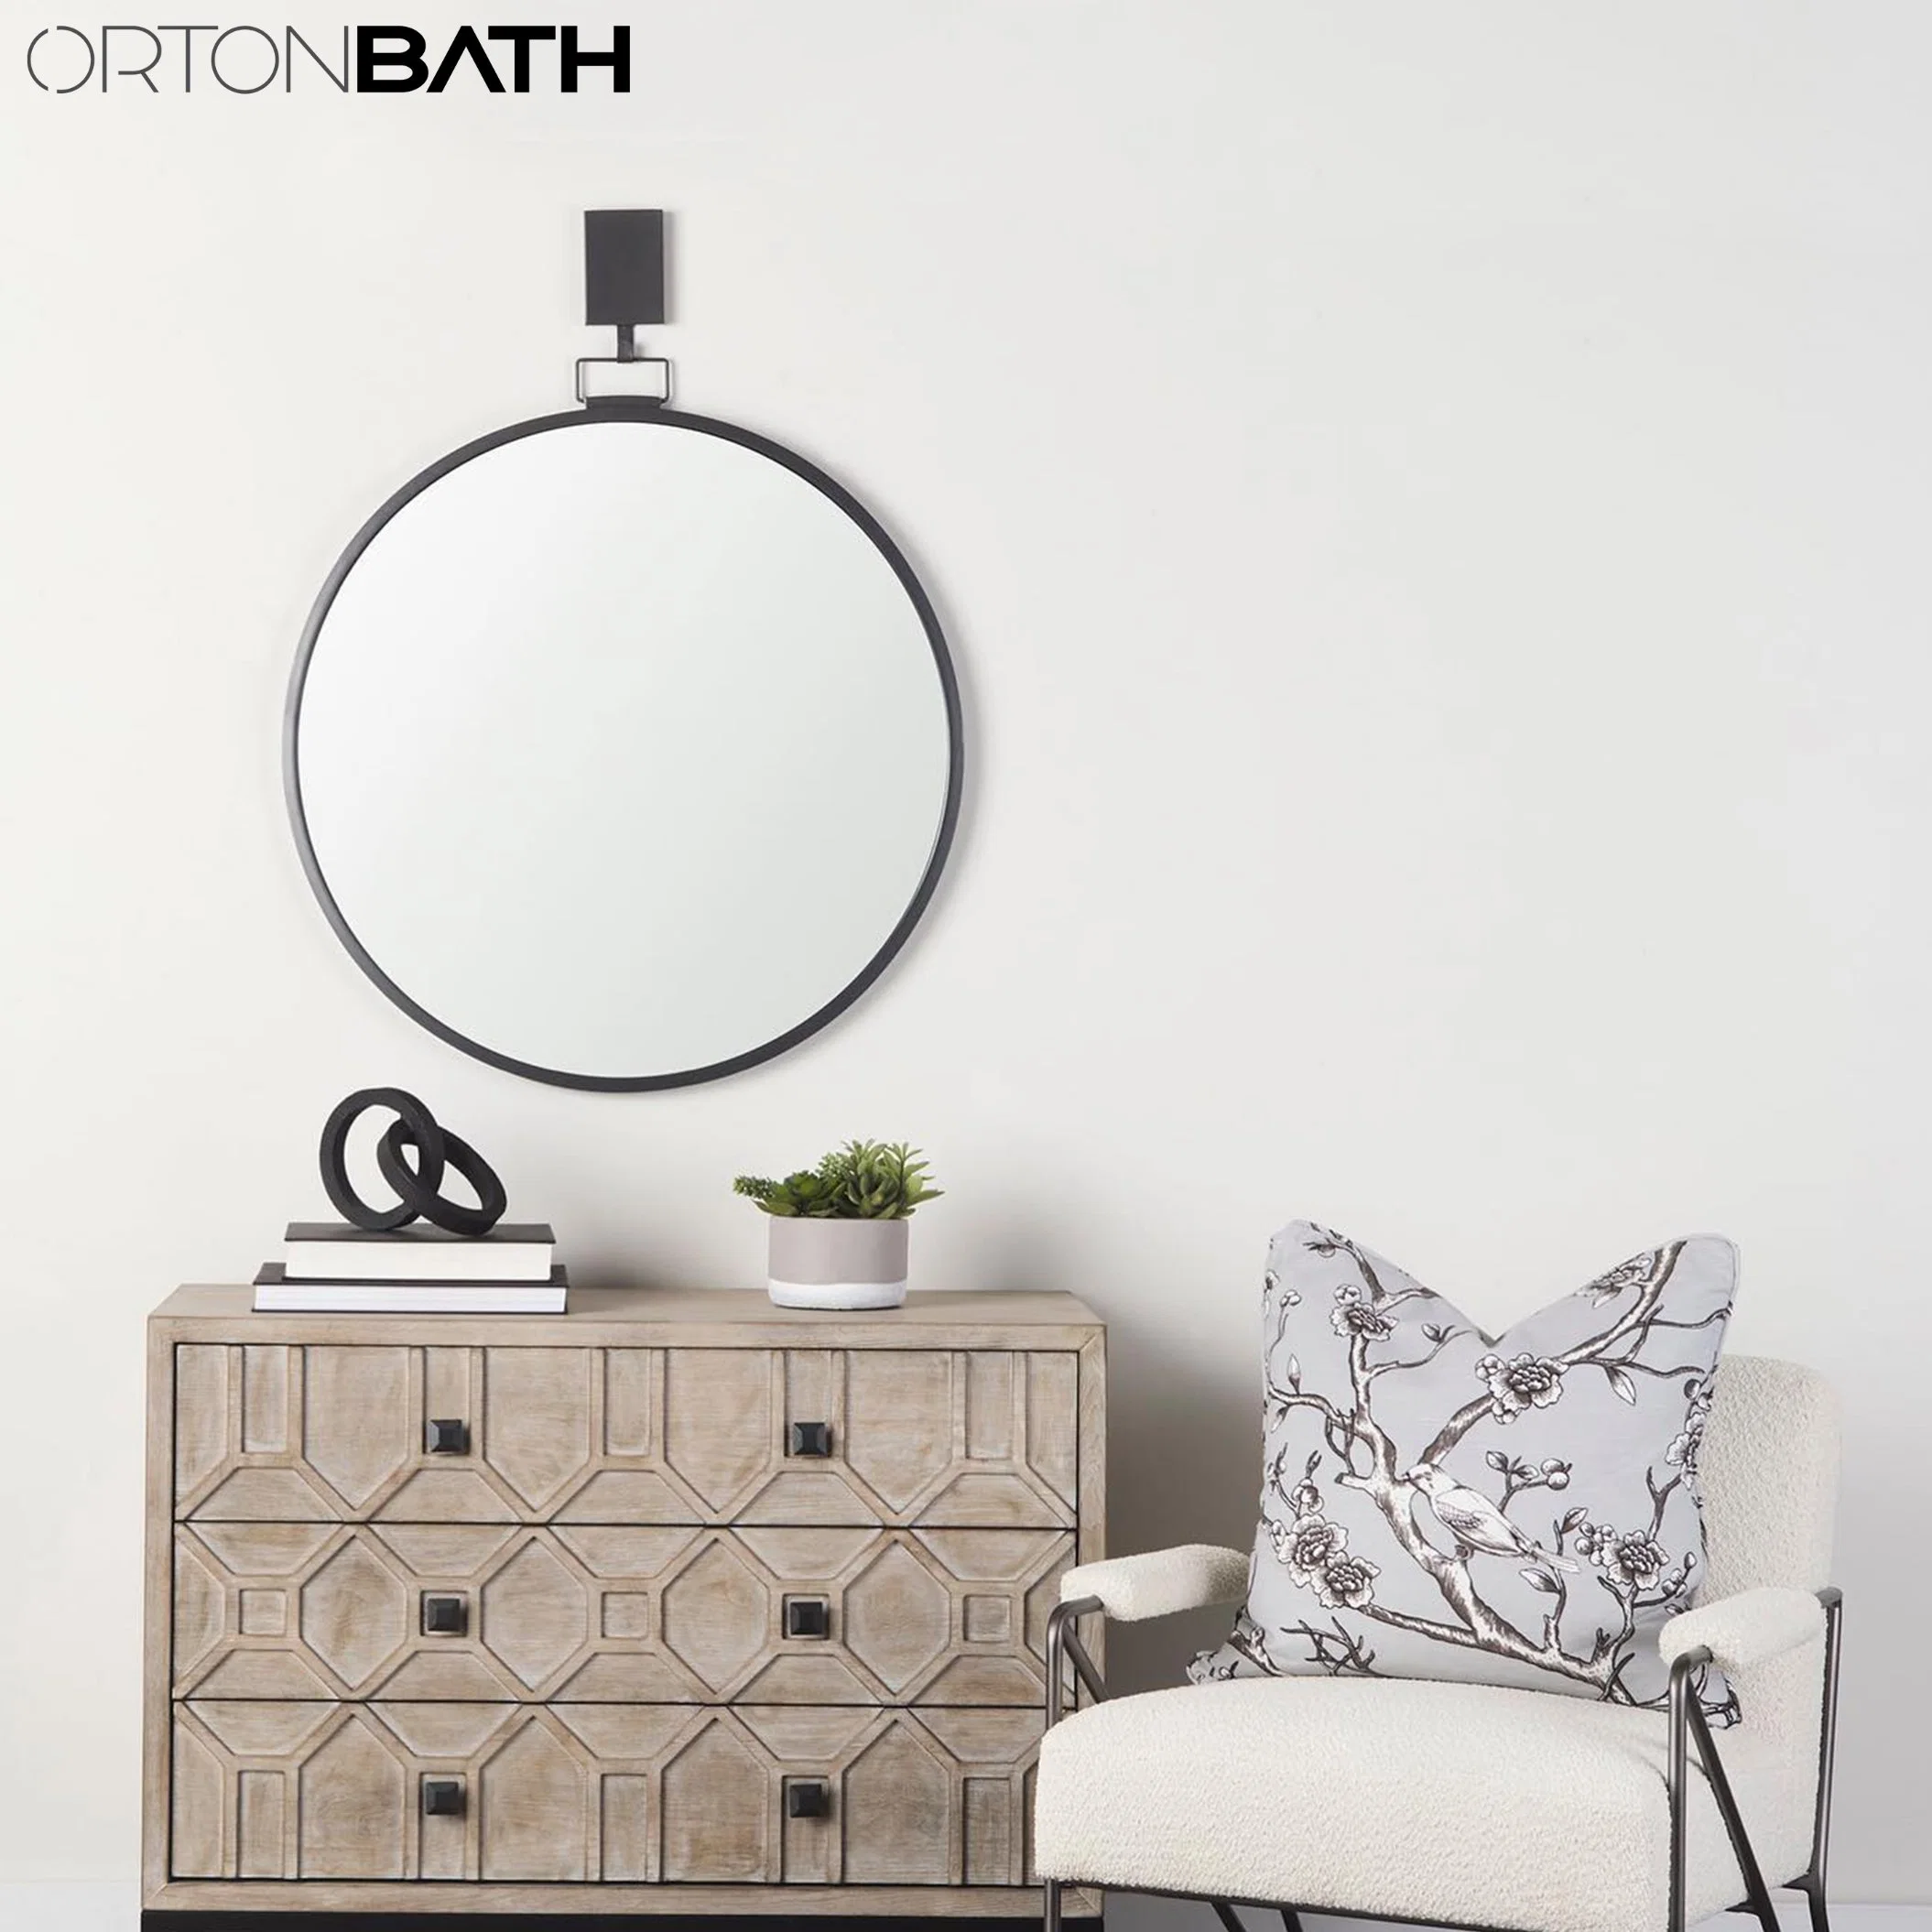 Ortonbath redonda negra pared decorativo espejo, agobiados rústico Cortijo de madera natural para la decoración del bastidor de un dormitorio con gancho colgante